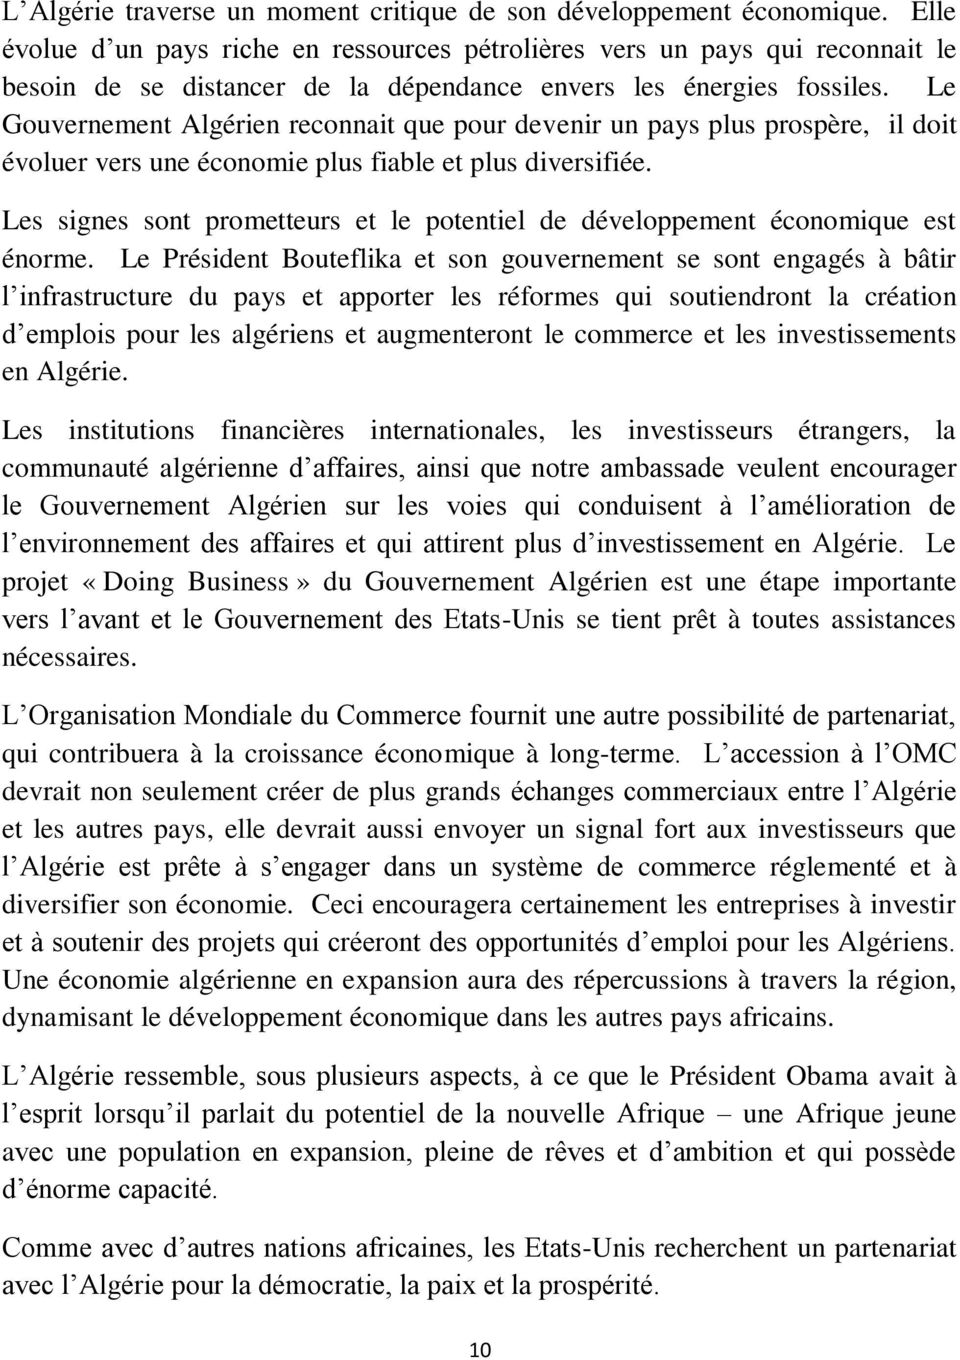 Le Gouvernement Algérien reconnait que pour devenir un pays plus prospère, il doit évoluer vers une économie plus fiable et plus diversifiée.